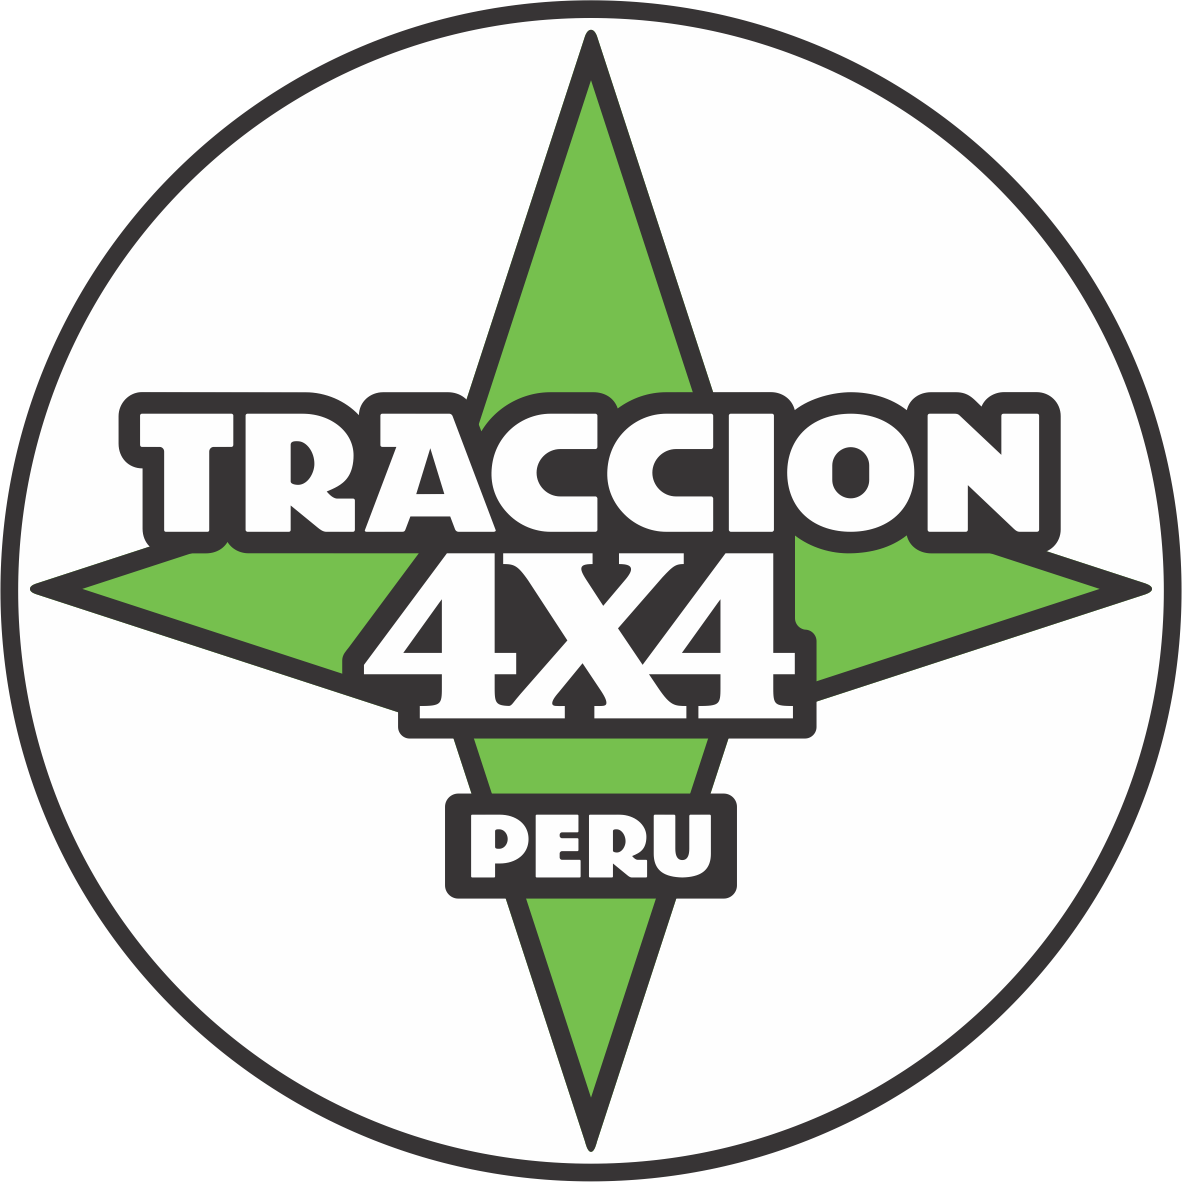 Traccion 4x4 Peru©